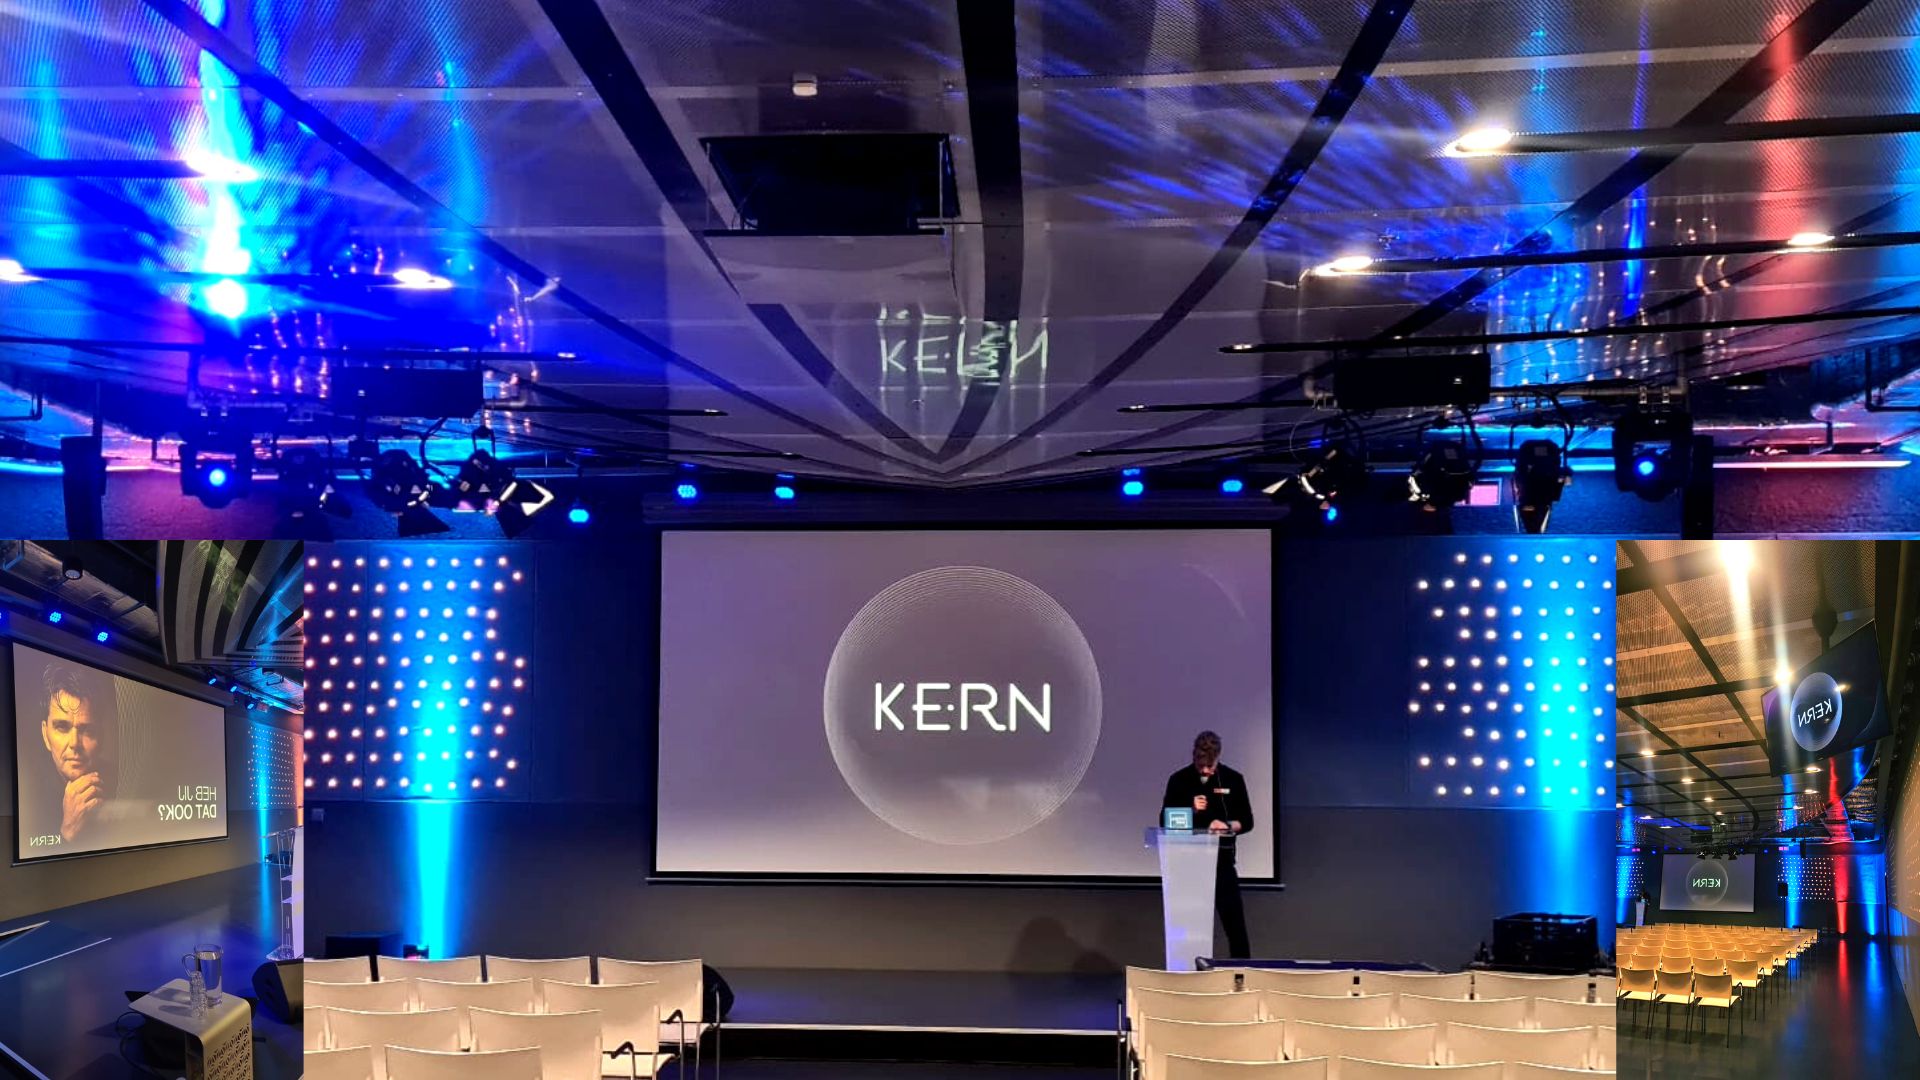 DE Kern show verbindt en raakt de kern van personeel. Ware verbinding.